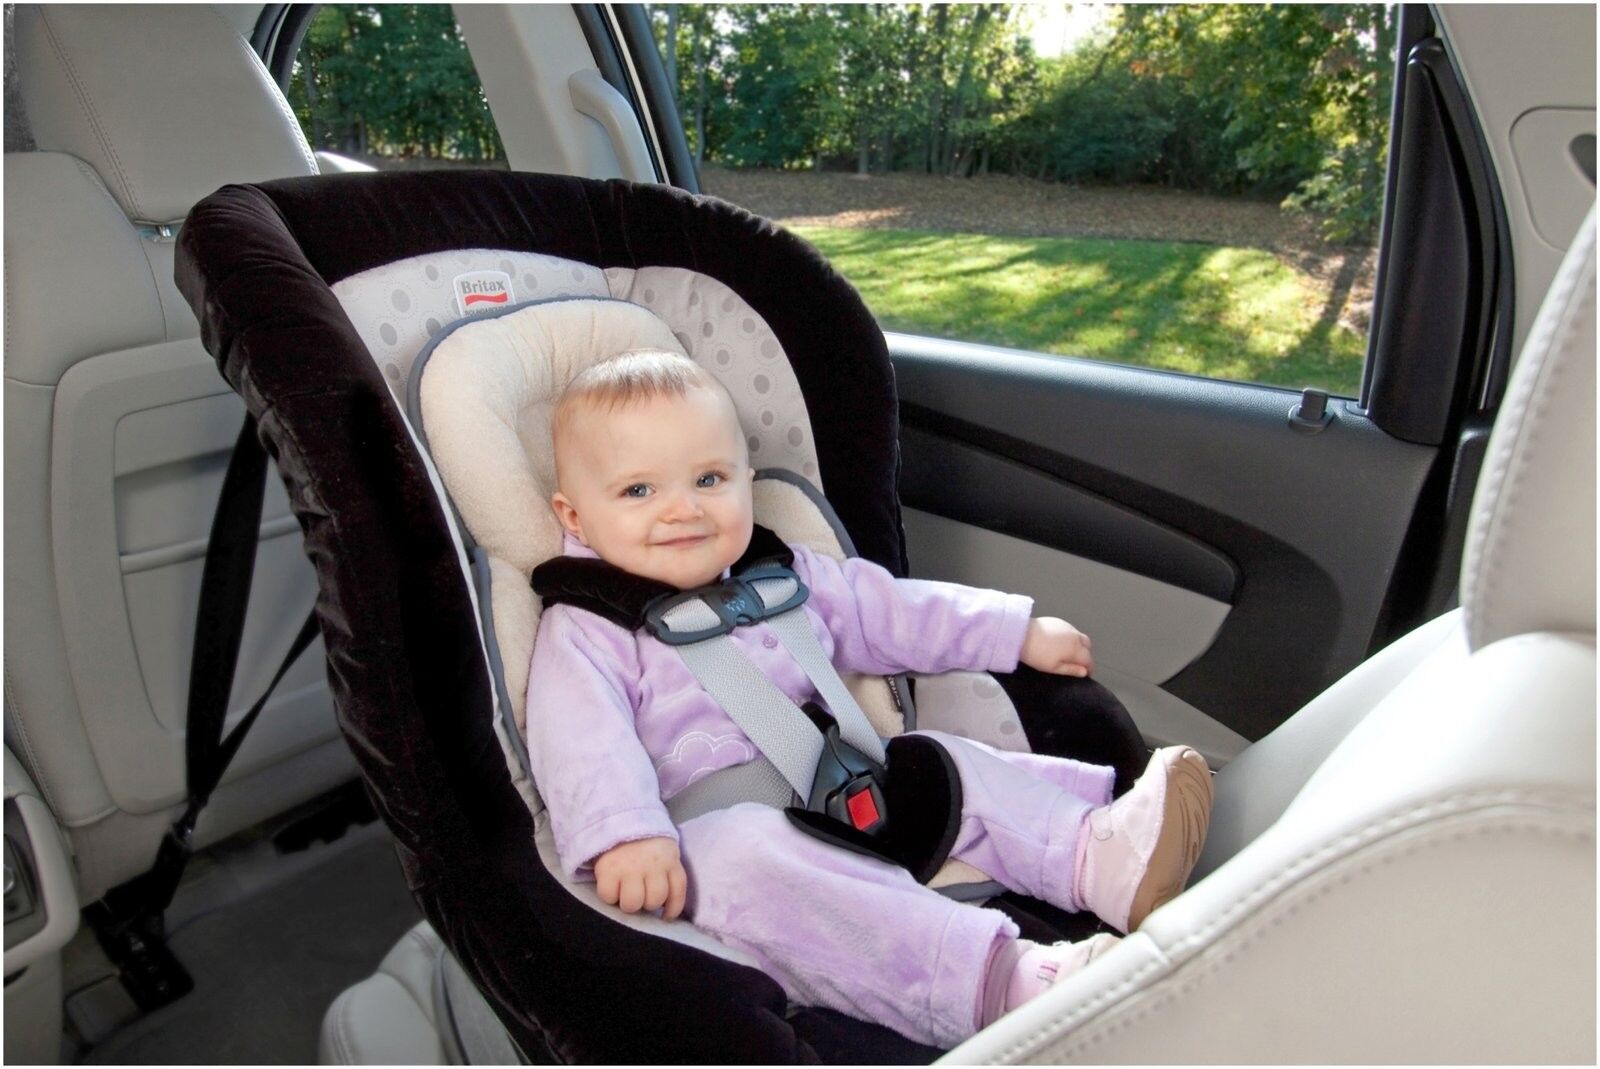 Люлька на переднем сиденье. Детское кресло для новорожденных в машину. Автолюлька для новорожденных в машине. Люлька для новорожденных в машину. Автолюлька JD vfibyt.